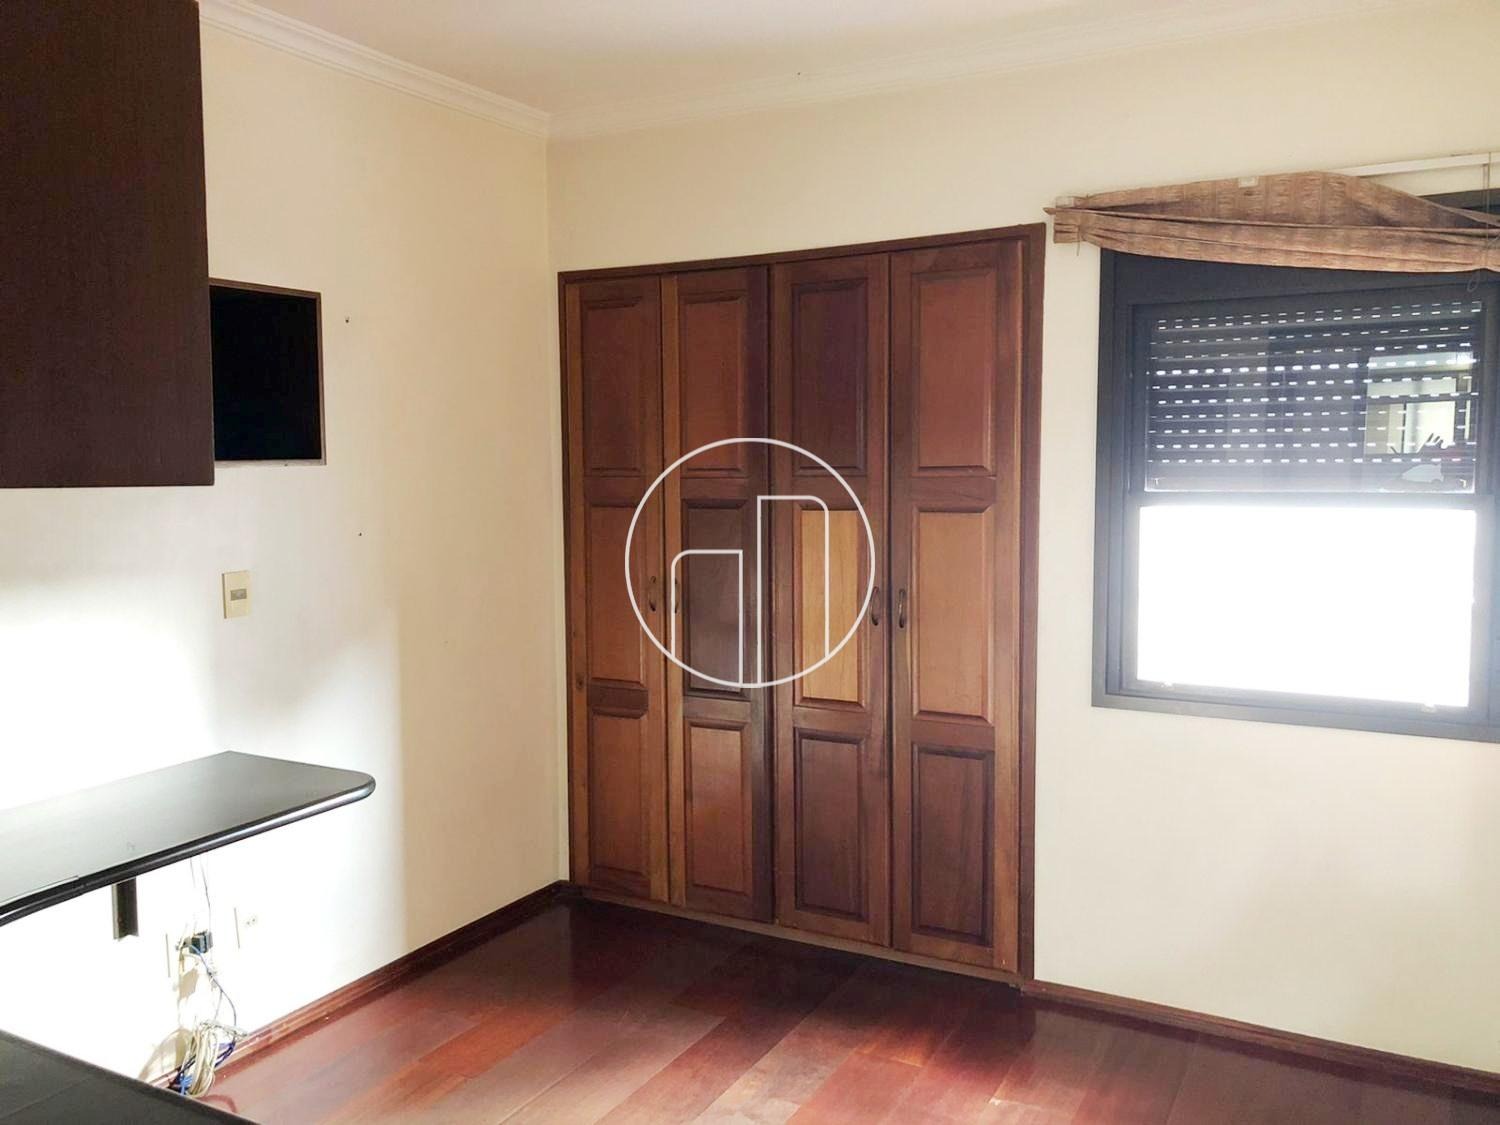 Piccoloto -Apartamento à venda no Jardim Guanabara em Campinas